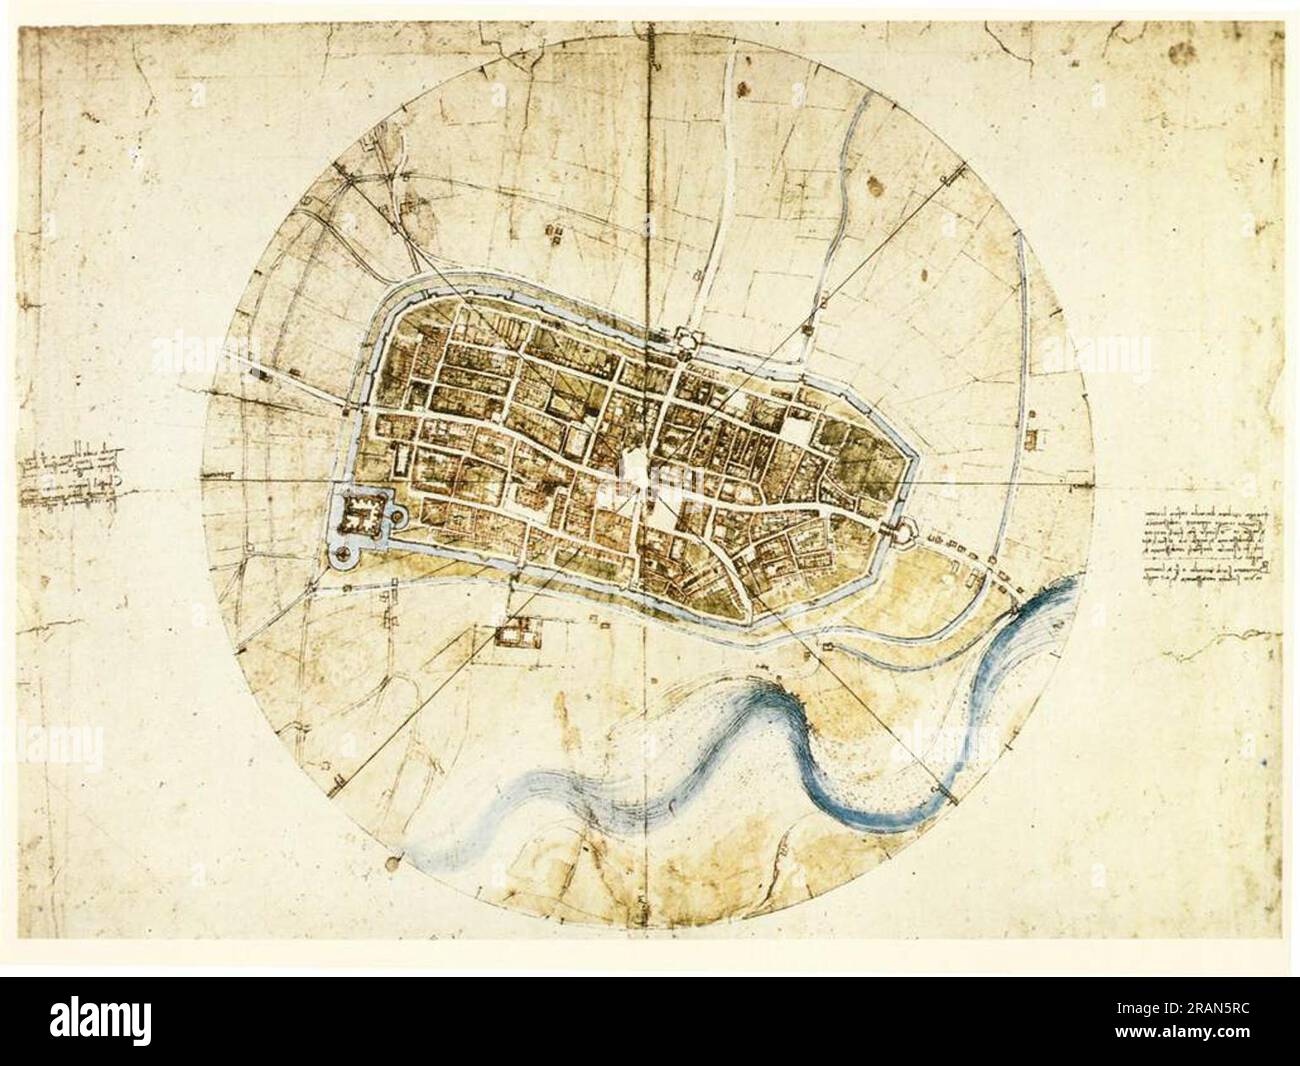 A plan of Imola 1502; Italy by Leonardo da Vinci Stock Photo